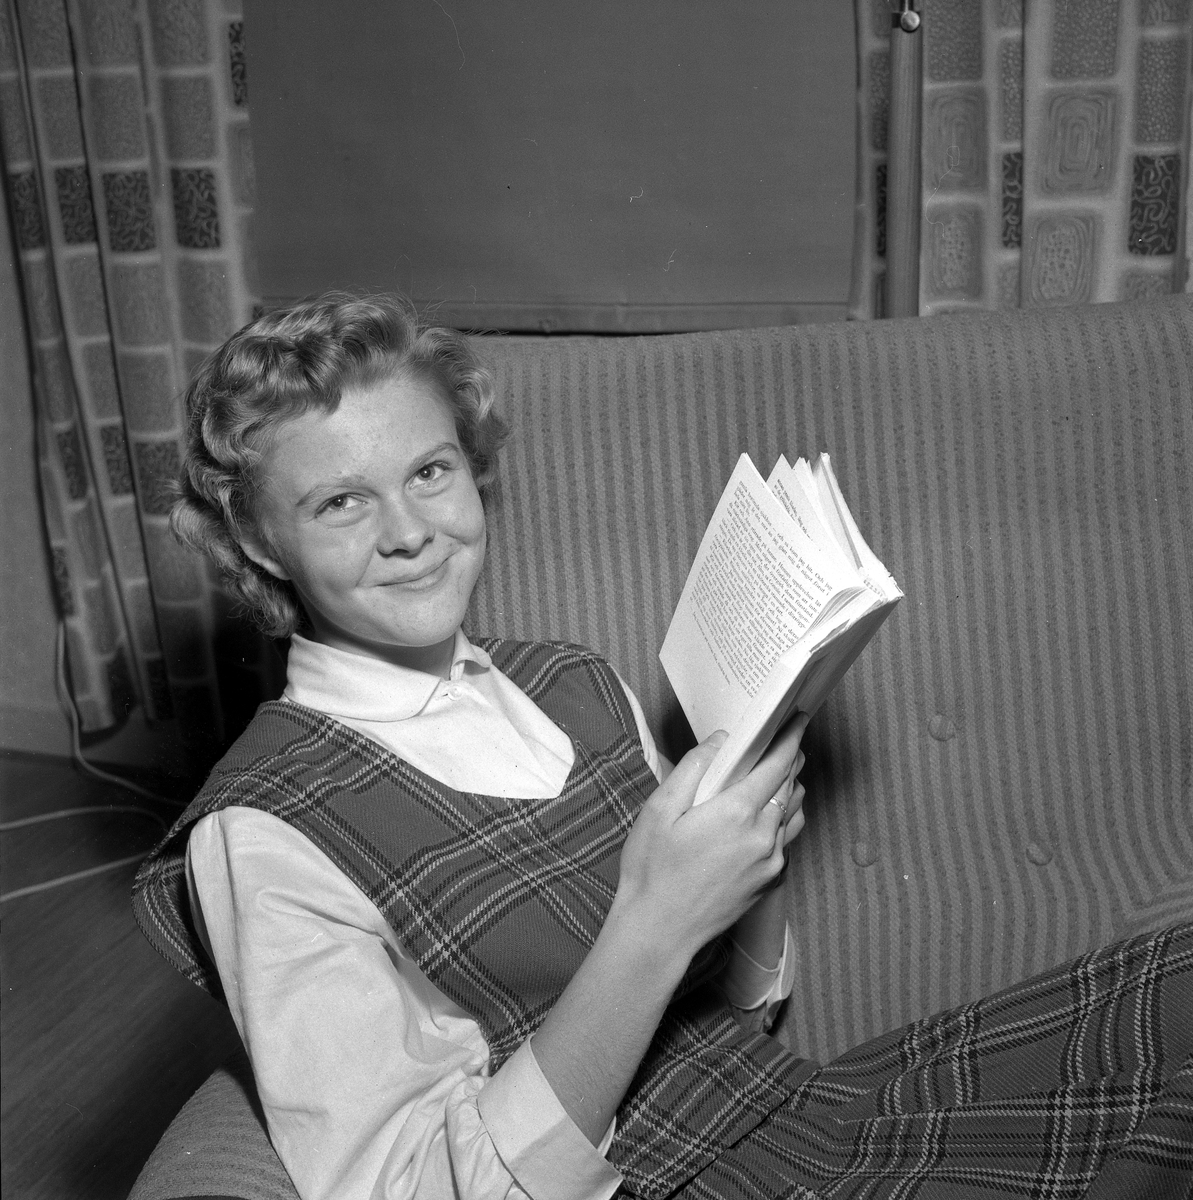 14-årig flicka vinner ÖK:s pristävling.
November 1956.